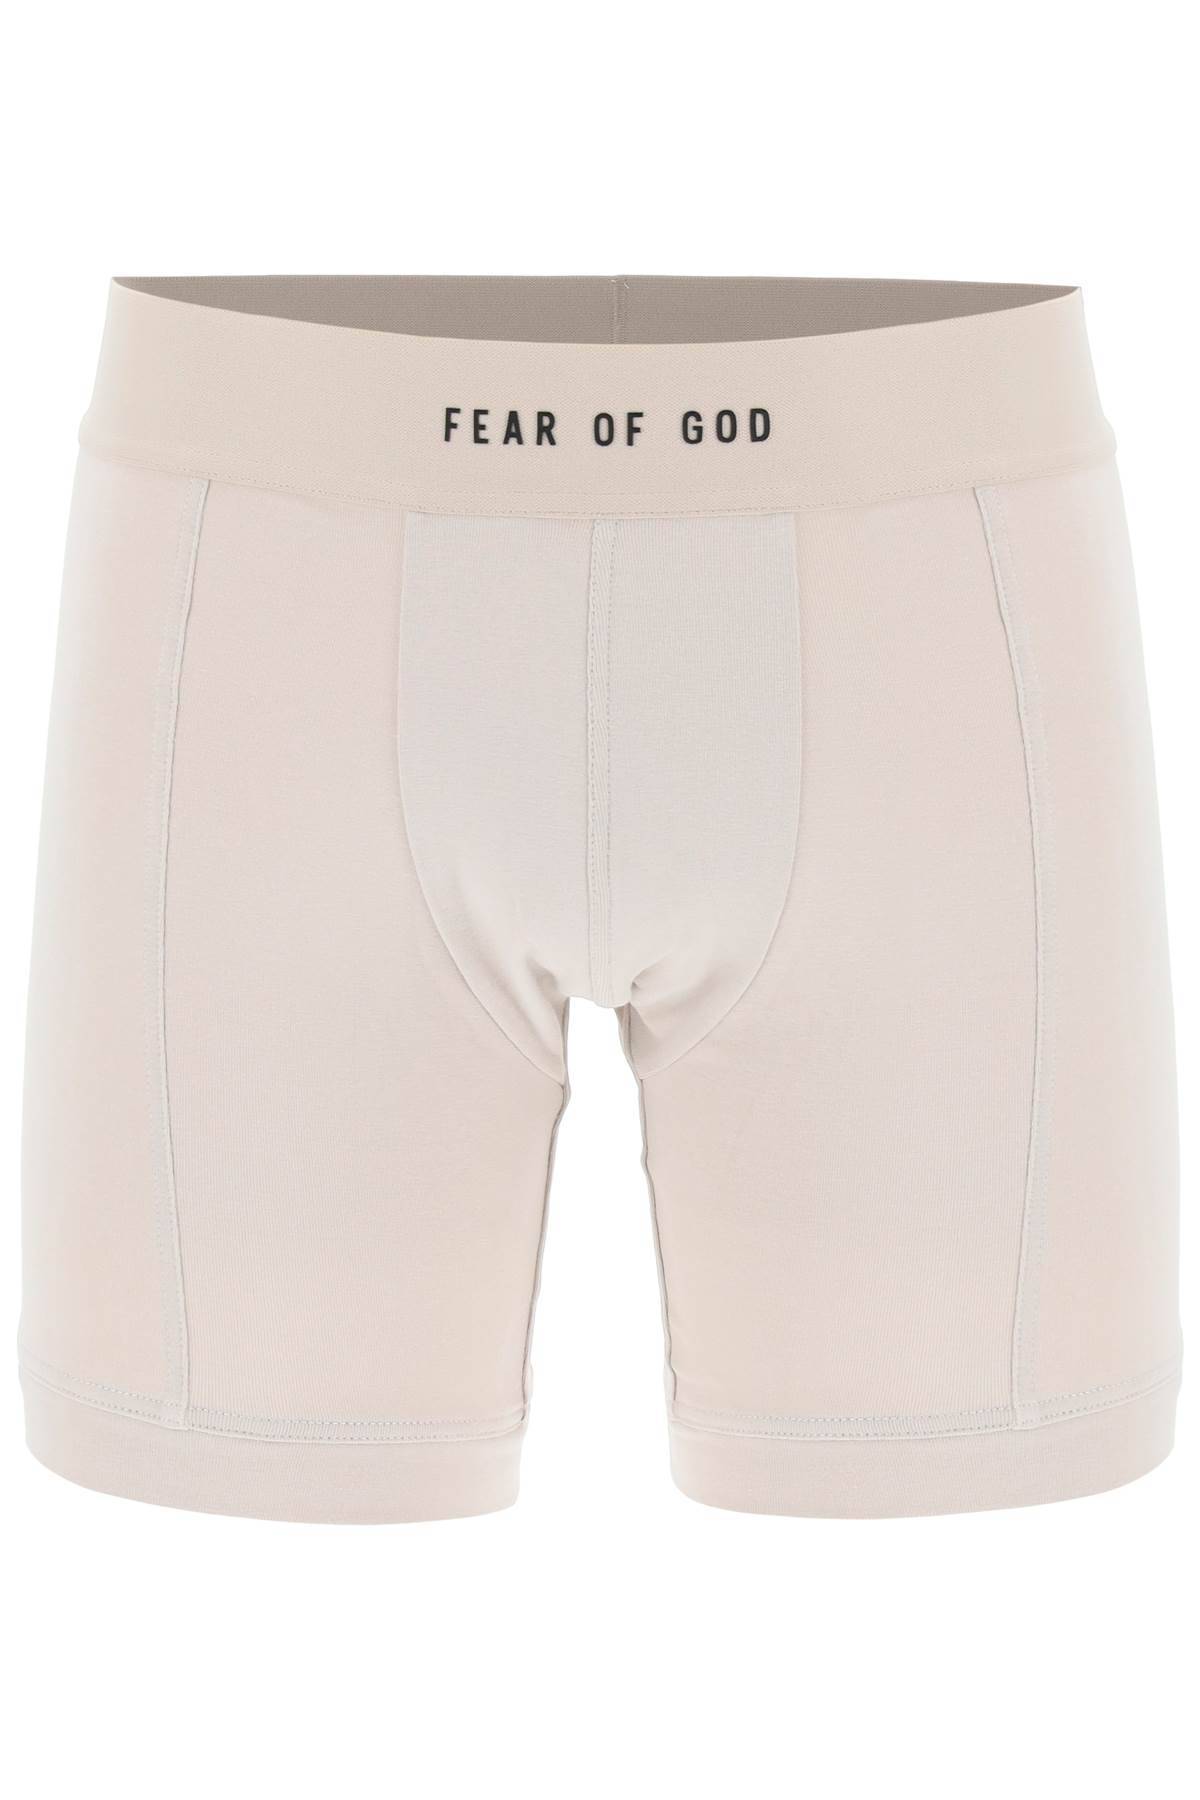 Fear Of God FEAR OF GOD bi-pack trunks